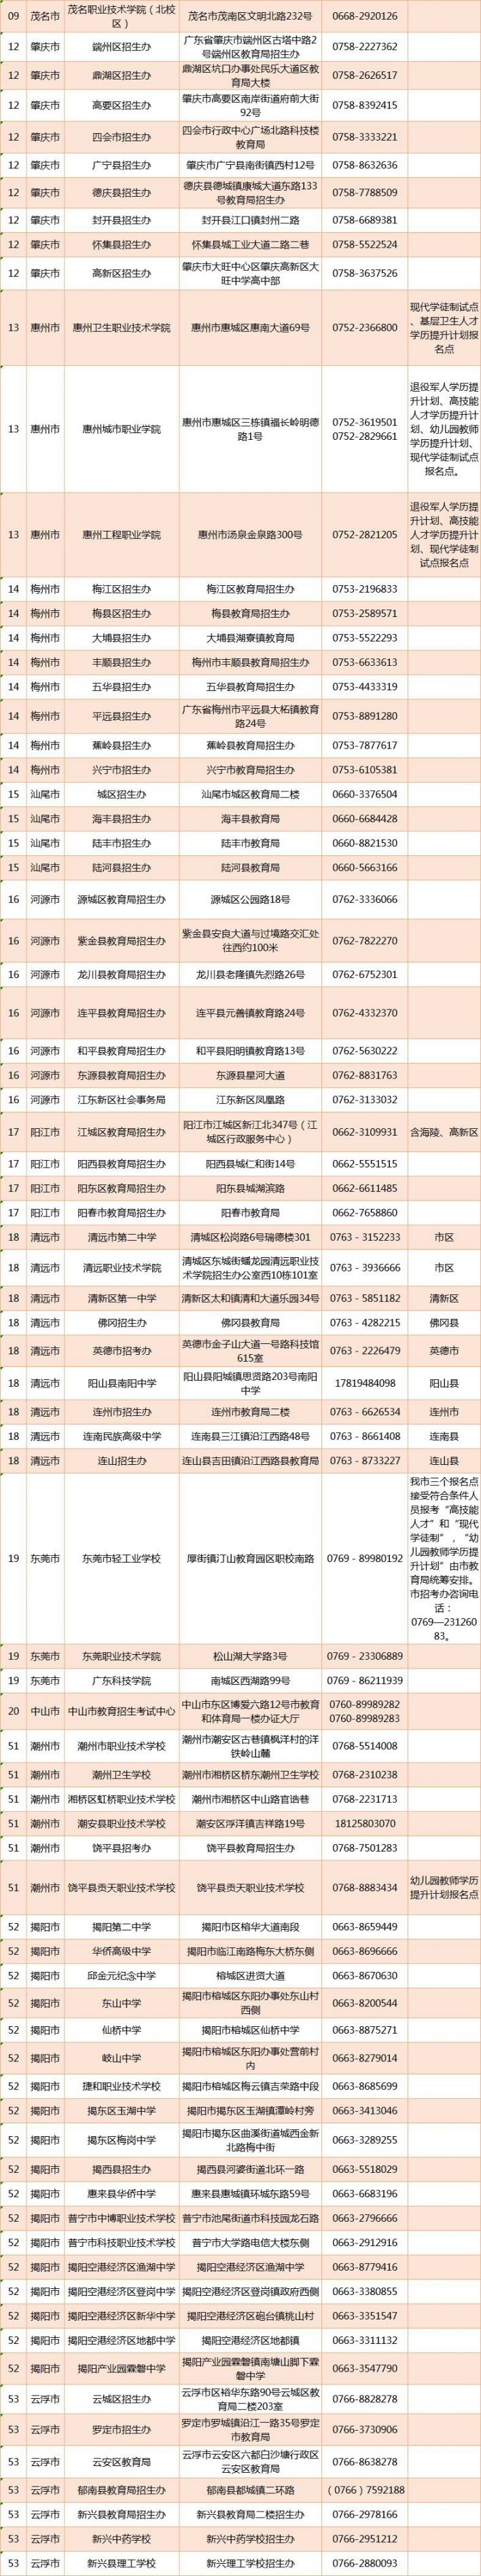 广东省2019年高职扩招各地市报名点一览表 深圳有三个